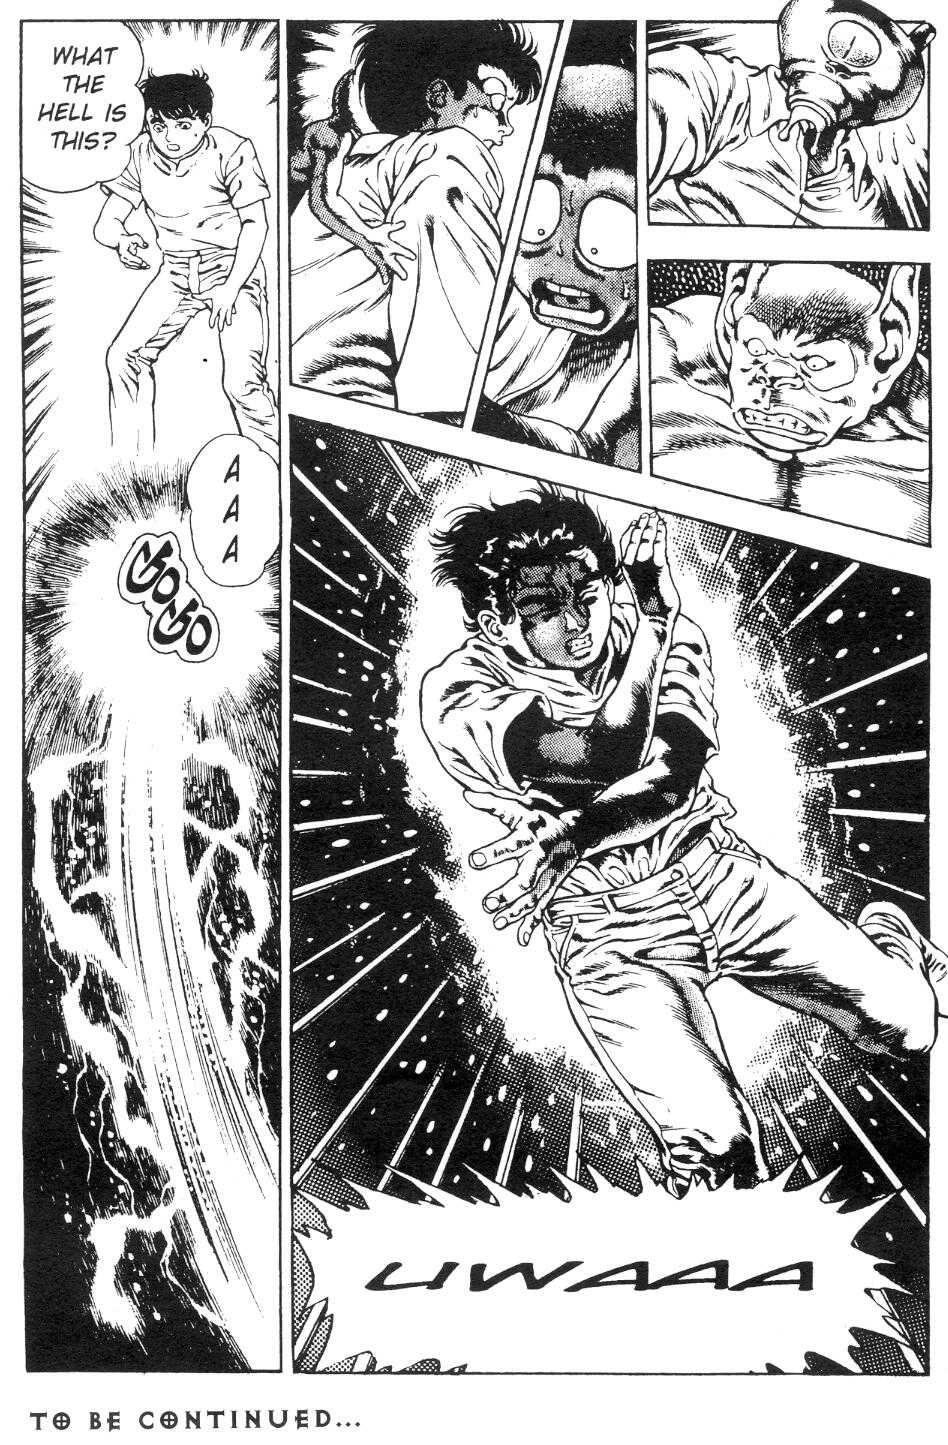 [Manga18][Toshio Maeda] Urotsukidoji - Return of the Overfiend No 2 (english) 